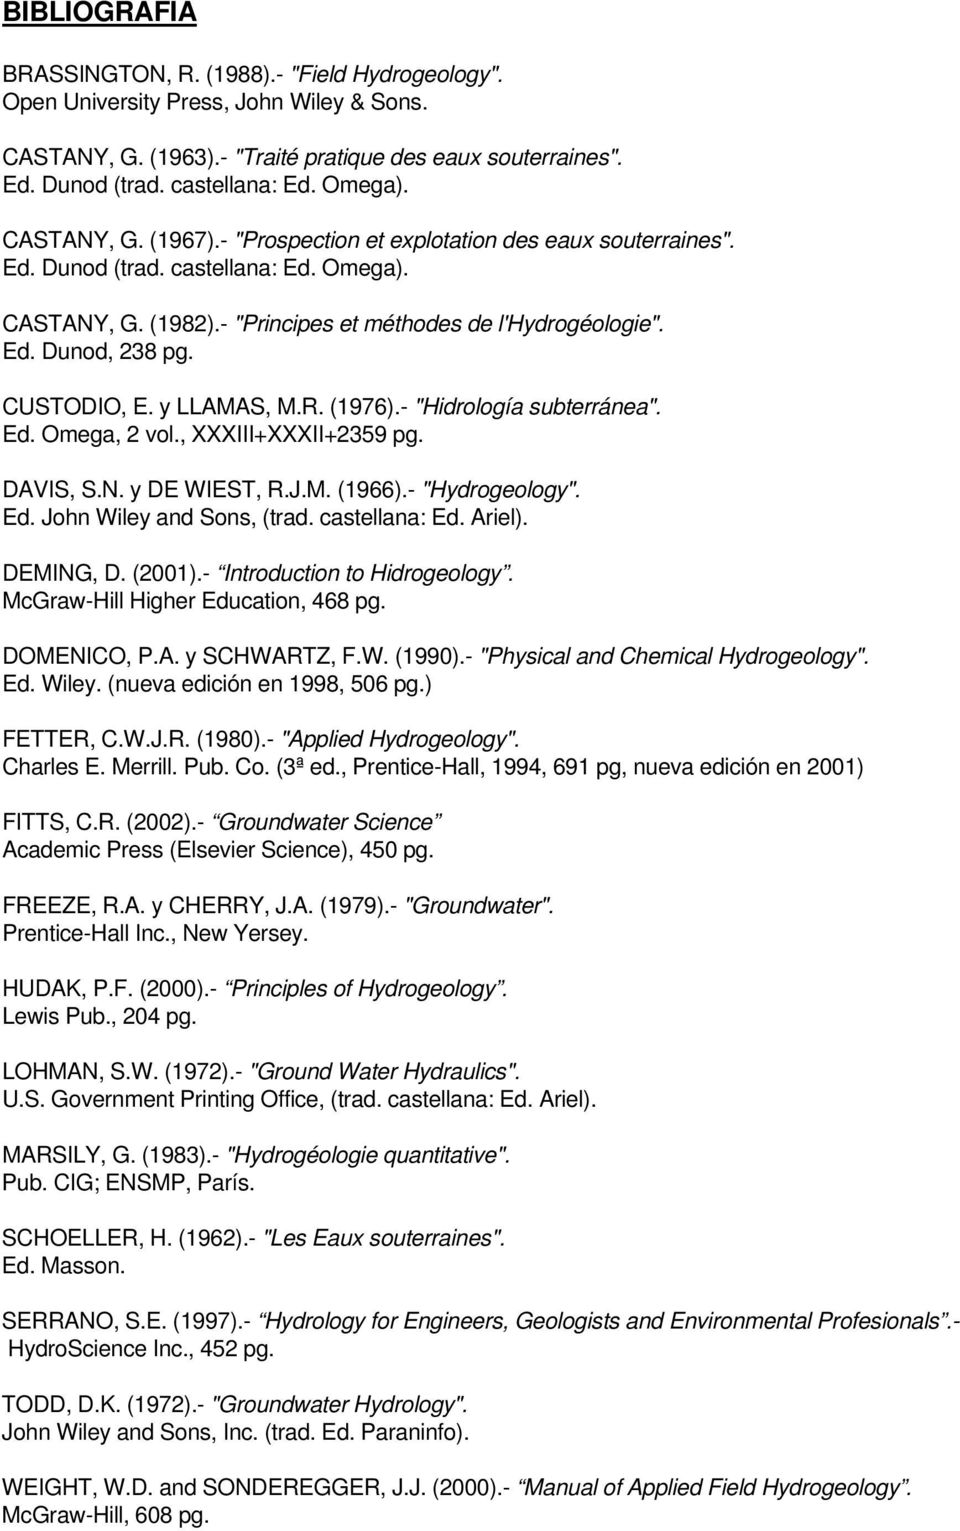 CUSTODIO, E. y LLAMAS, M.R. (1976).- "Hidrología subterránea". Ed. Omega, 2 vol., XXXIII+XXXII+2359 pg. DAVIS, S.N. y DE WIEST, R.J.M. (1966).- "Hydrogeology". Ed. John Wiley and Sons, (trad.